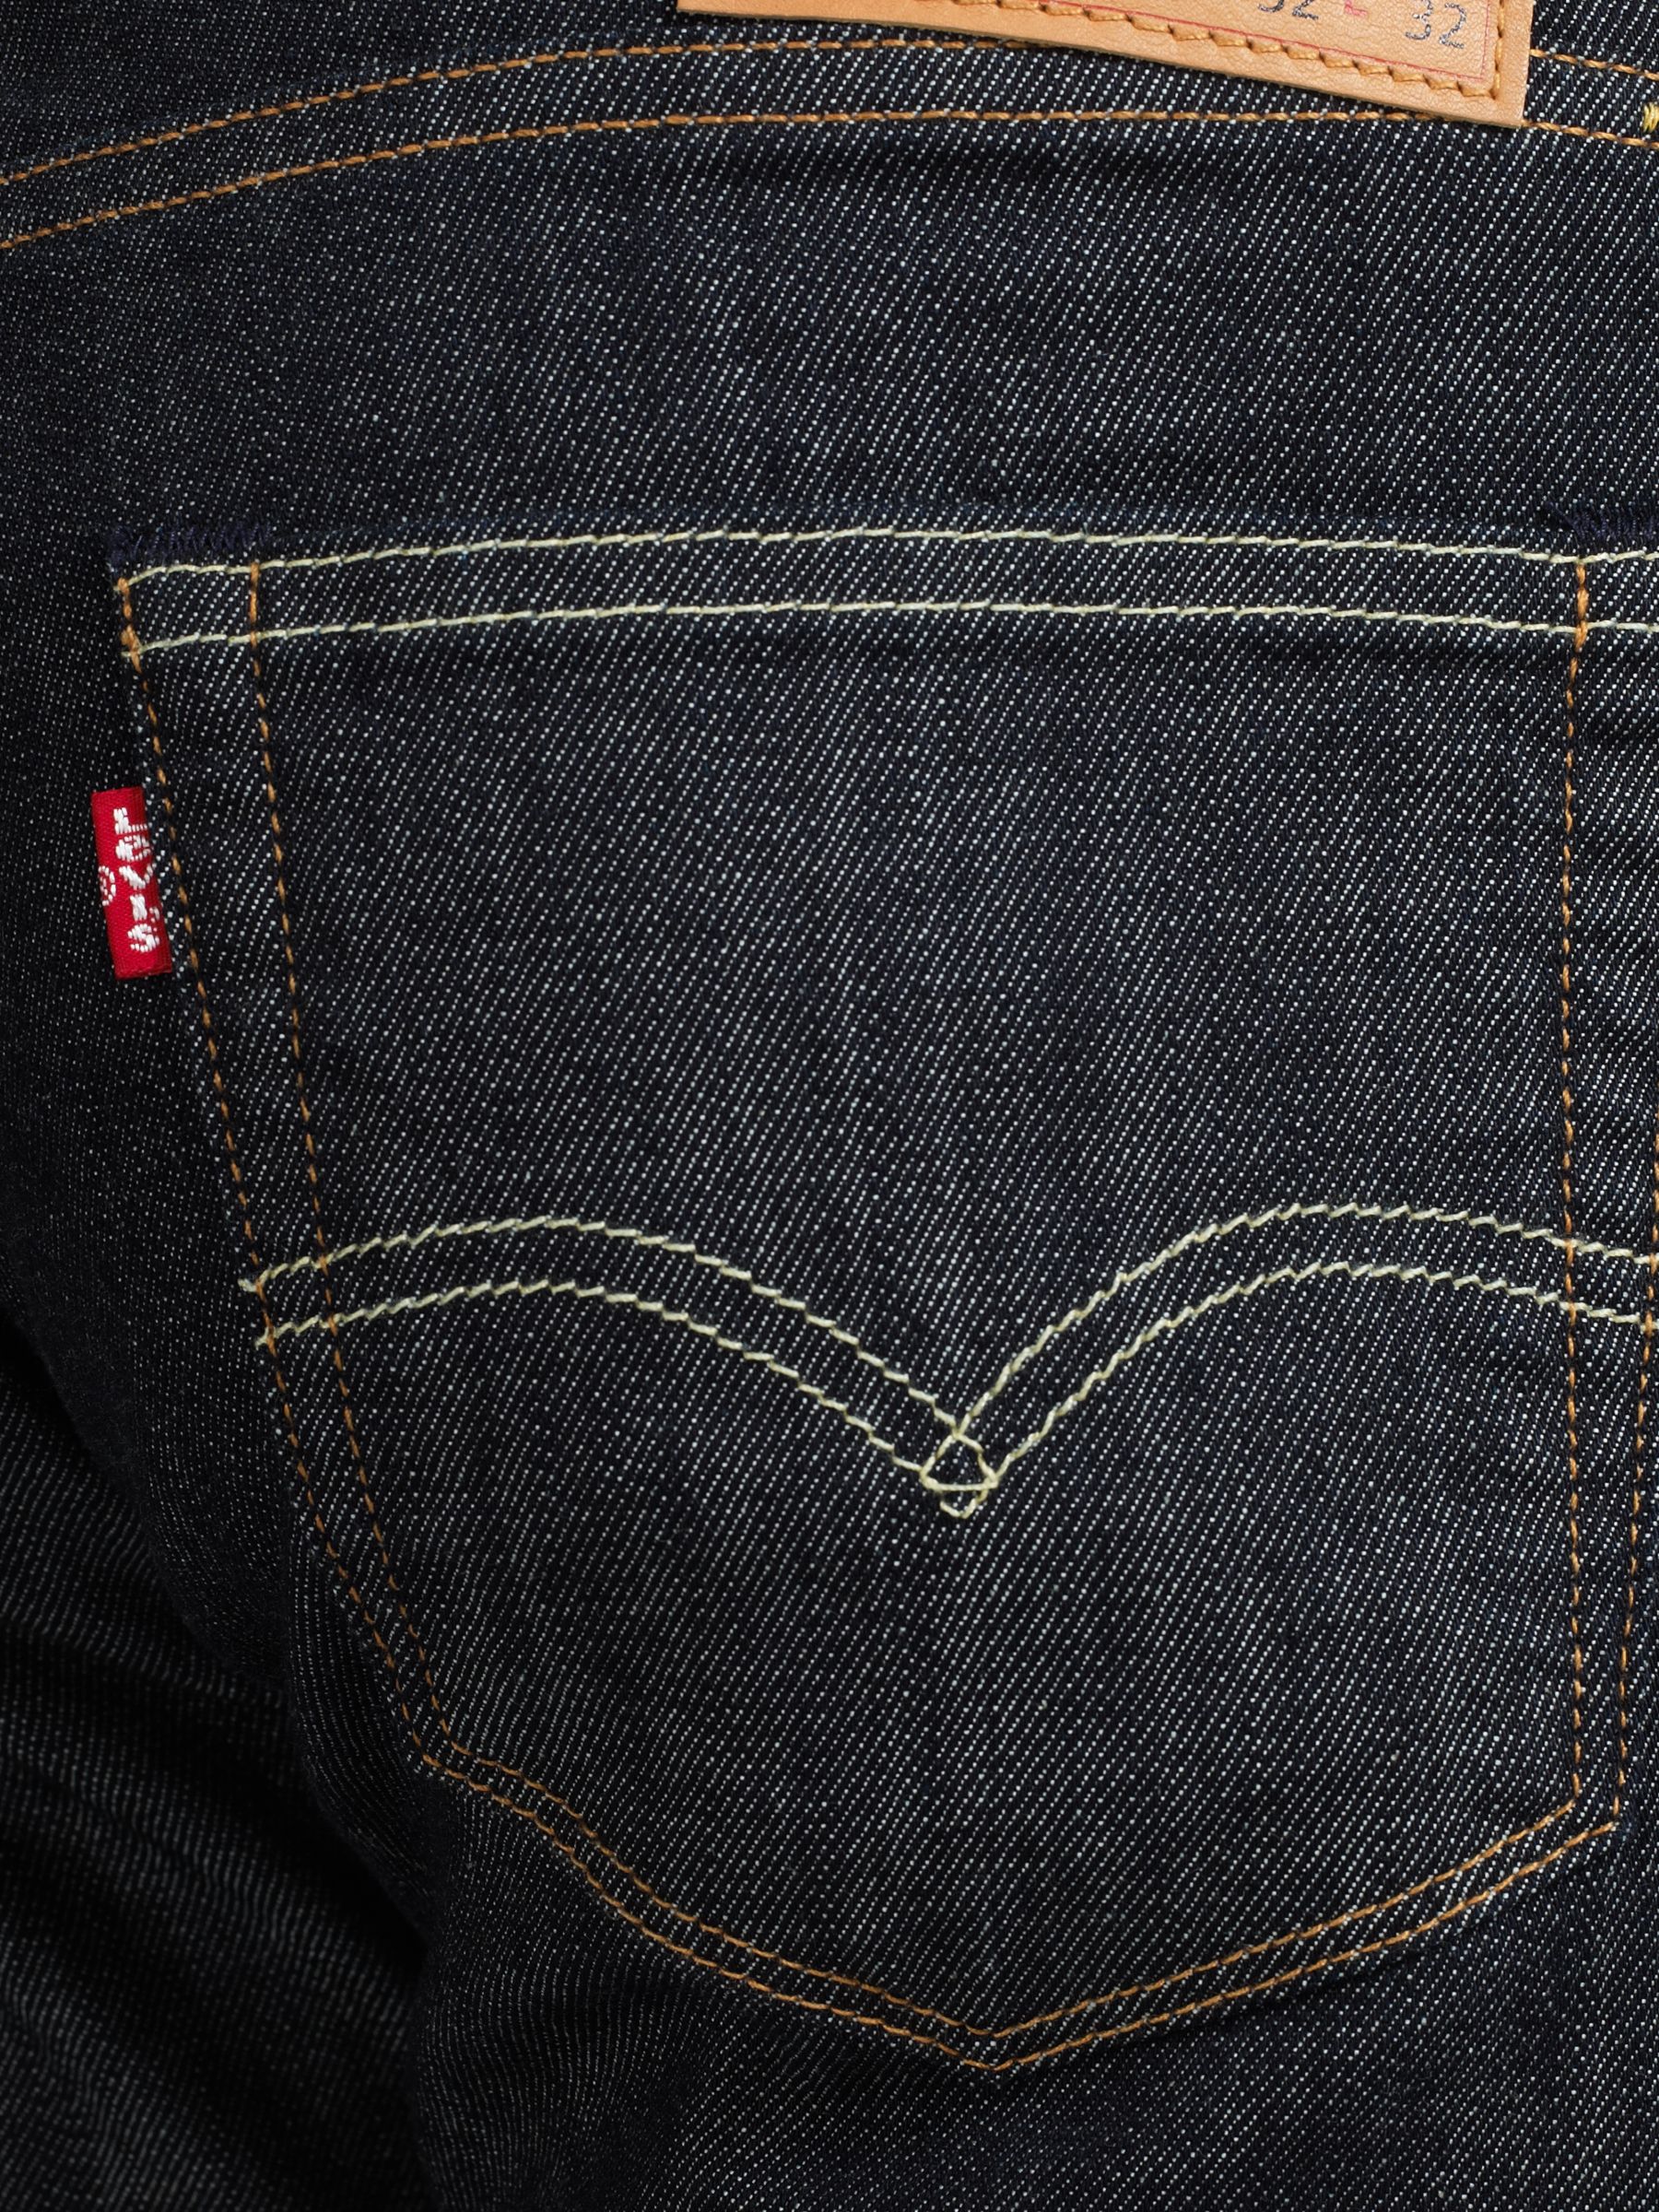 504 levi's jeans online